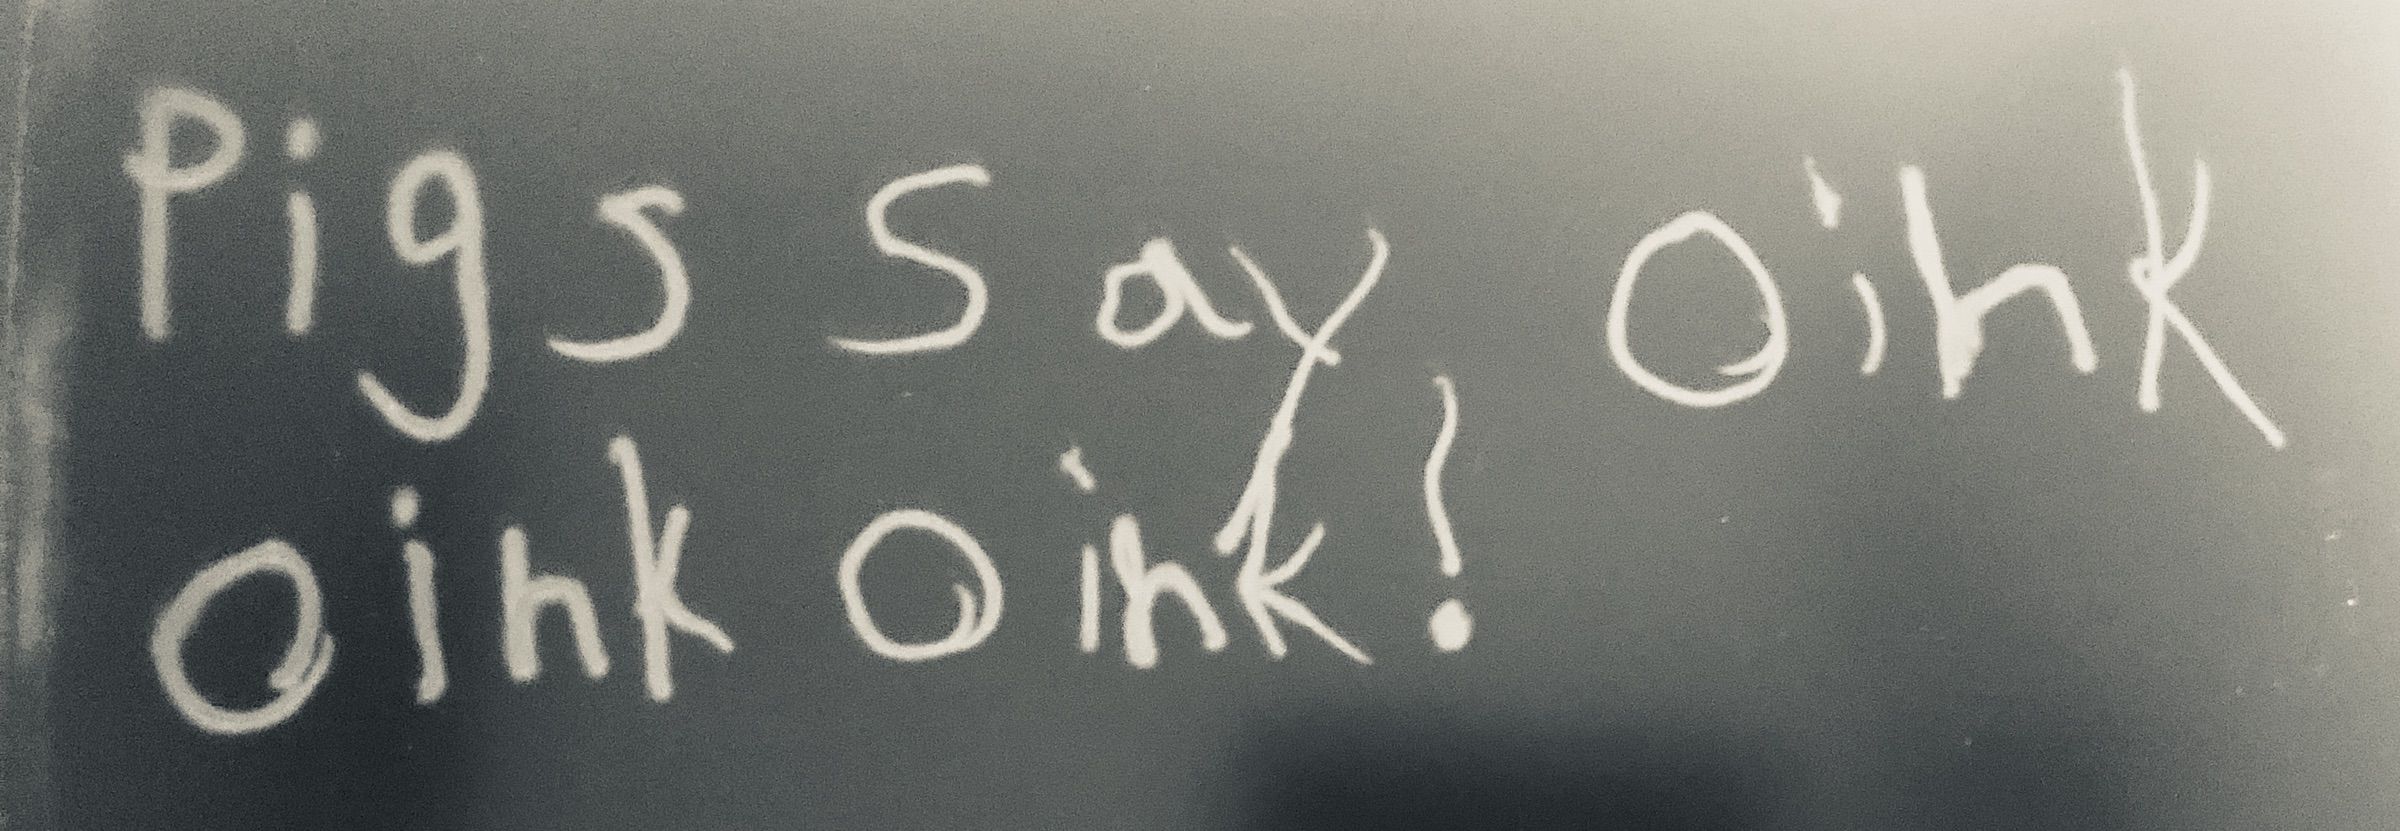 hand written pigs say oink oink oink